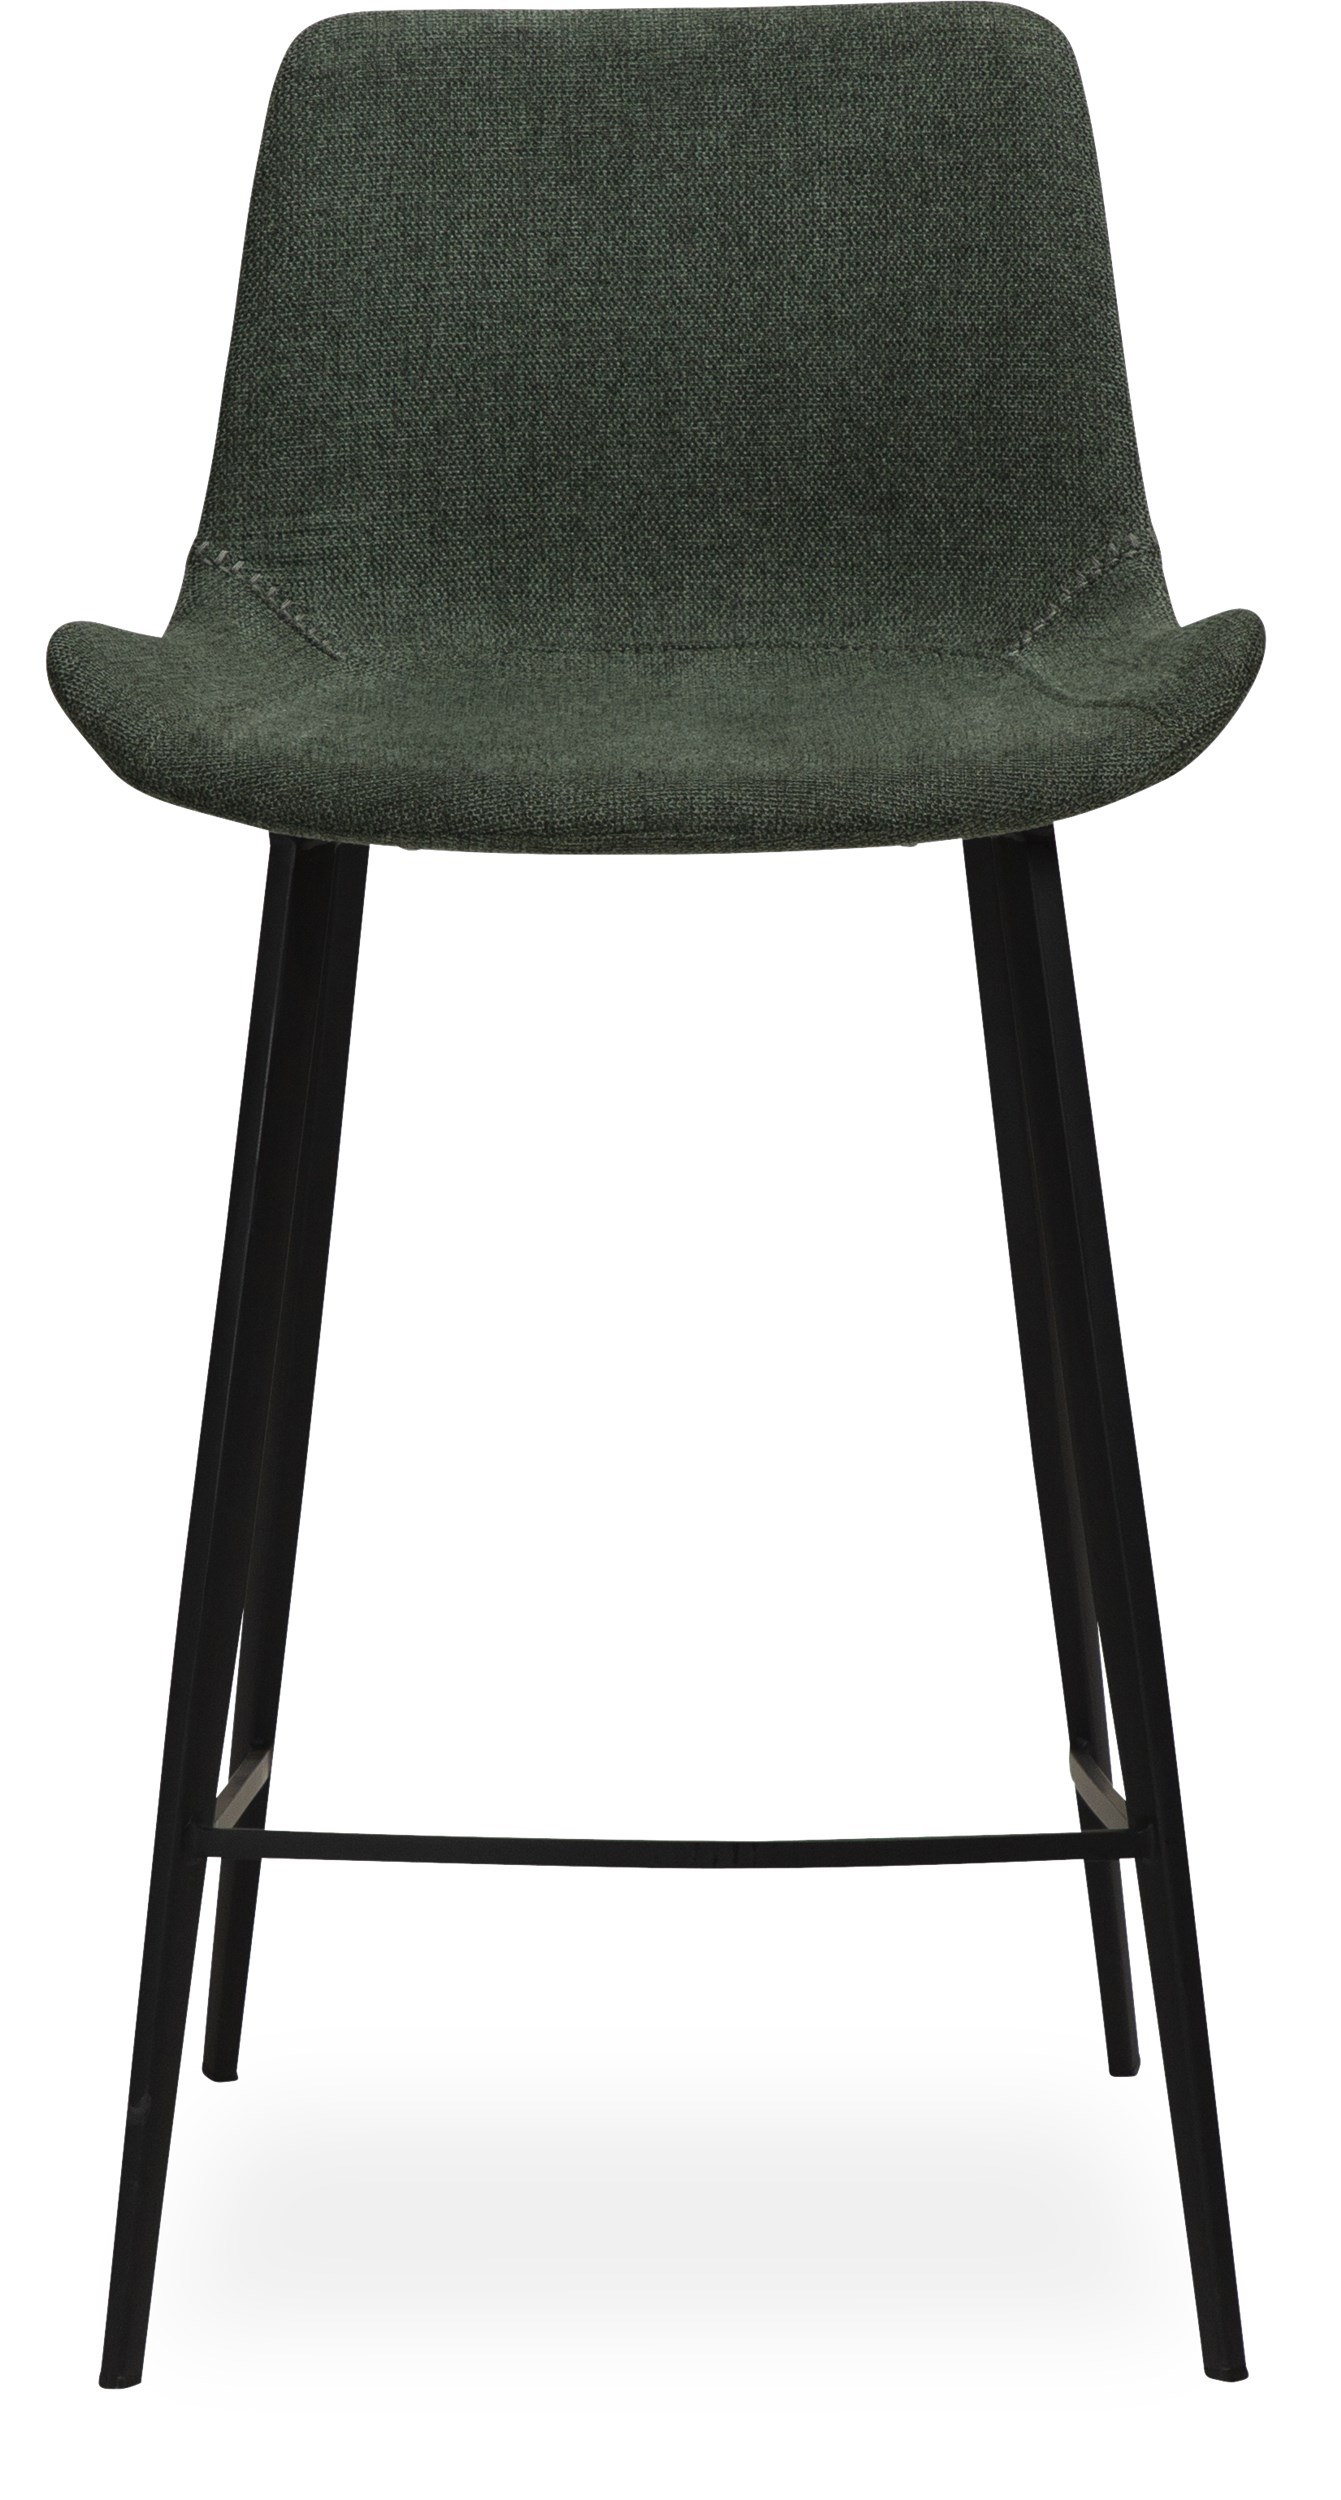 Hype Counterstol - Sits i sage green textil och ben i svartlackerad metall